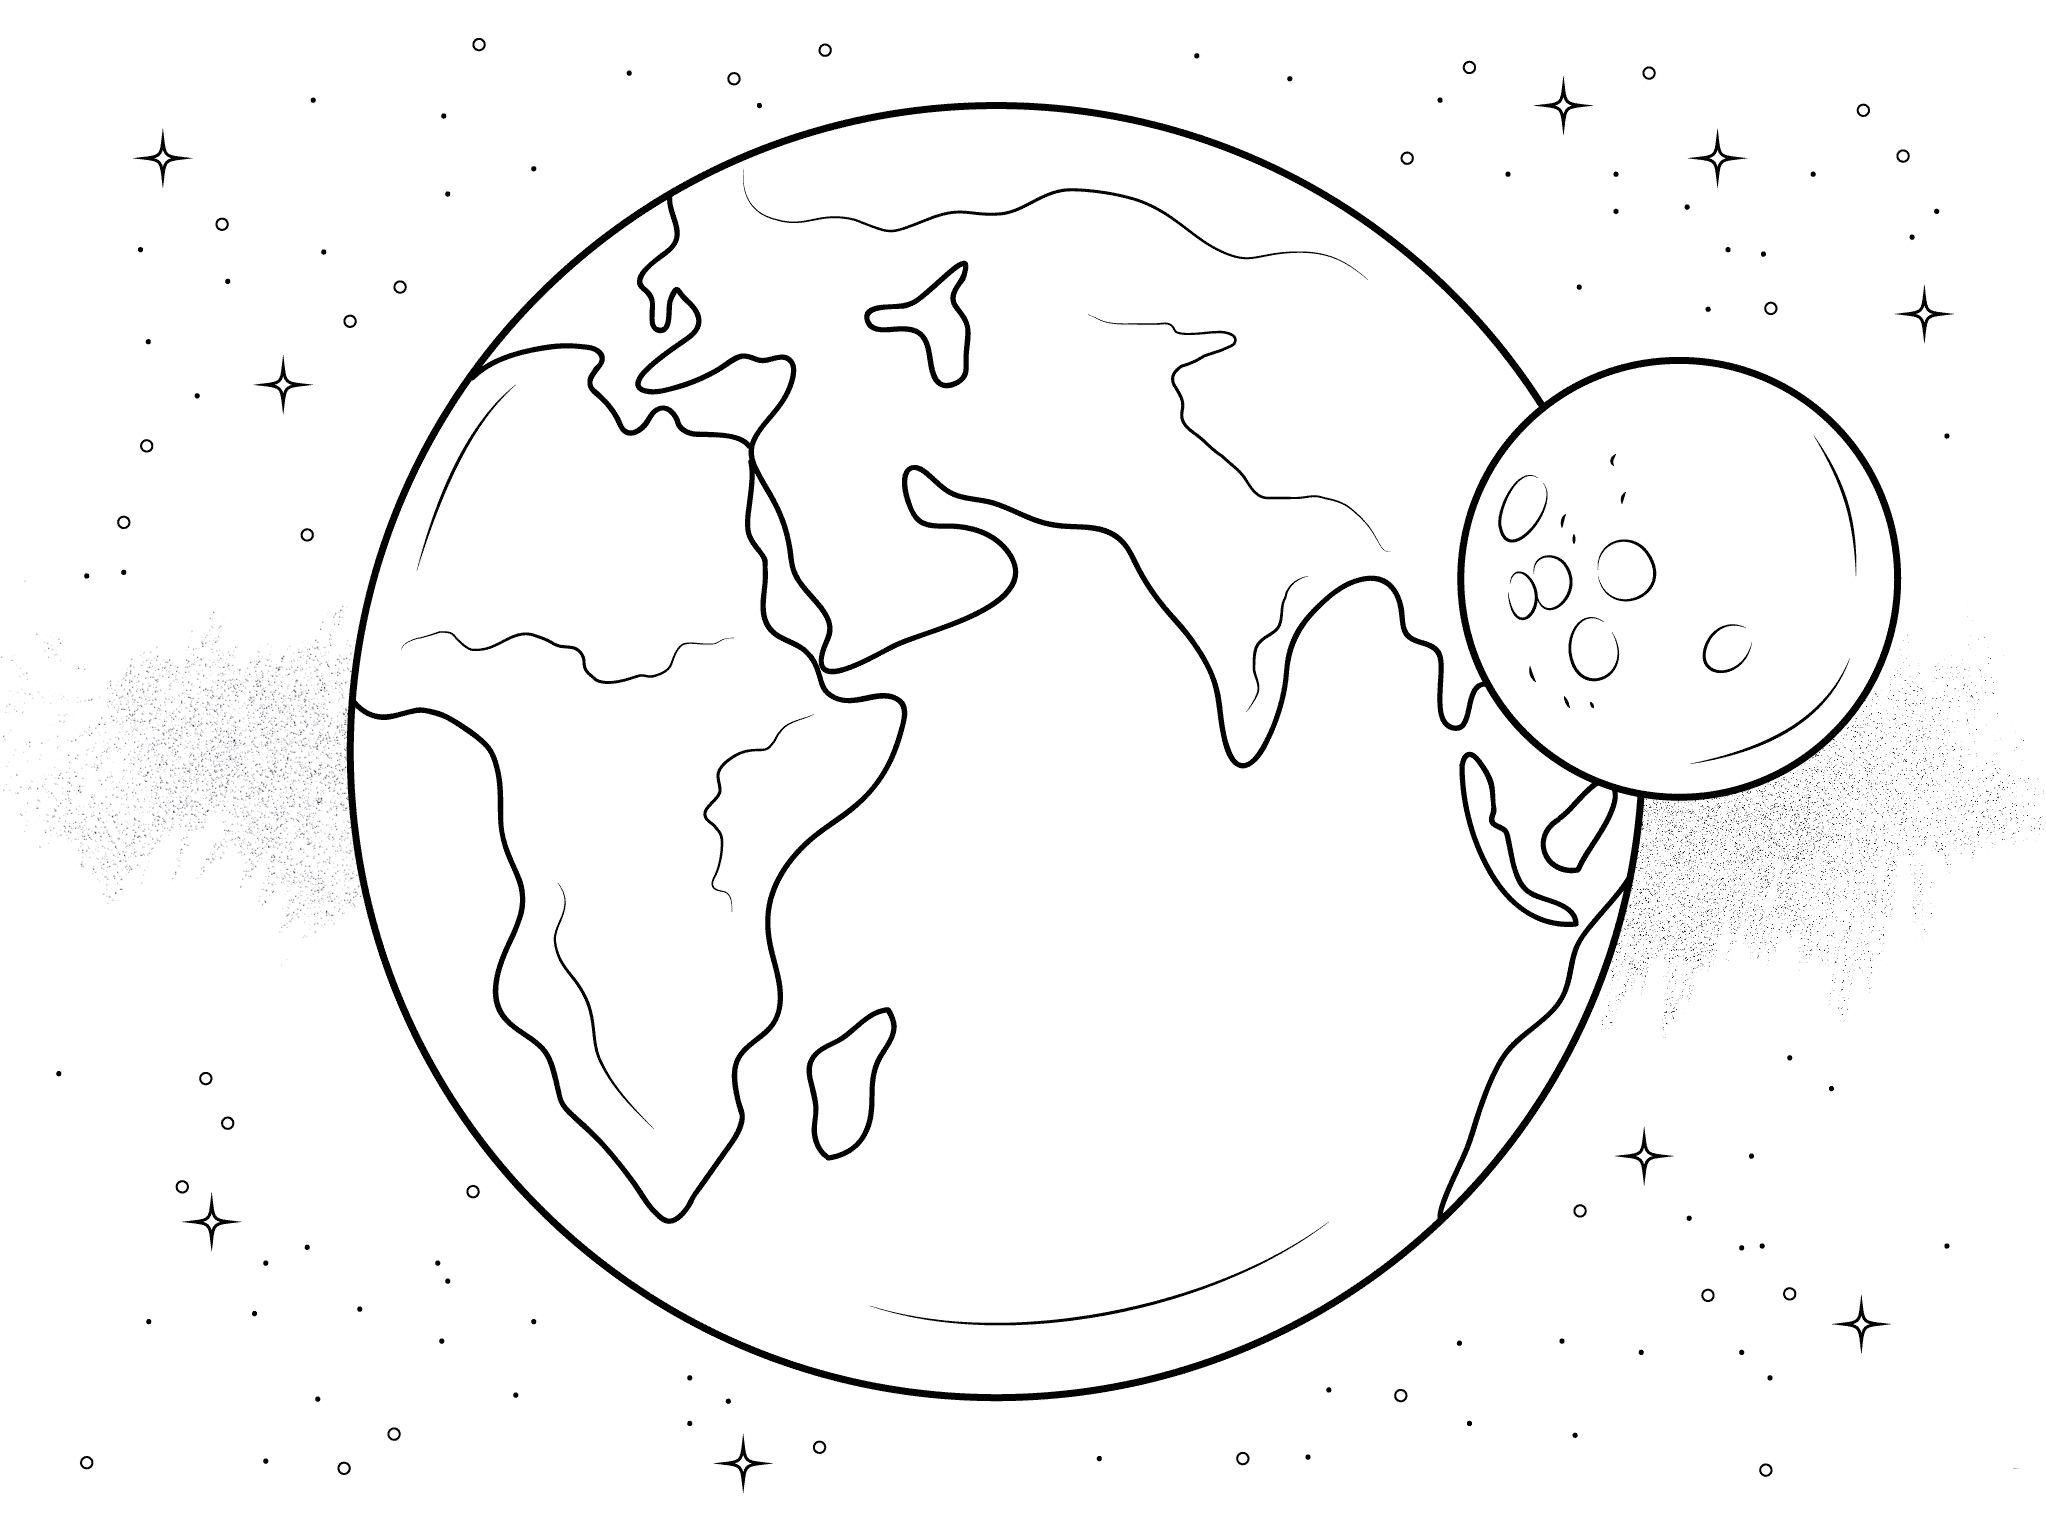 דף צביעה עם גדור הארץ מוקף כוכבים